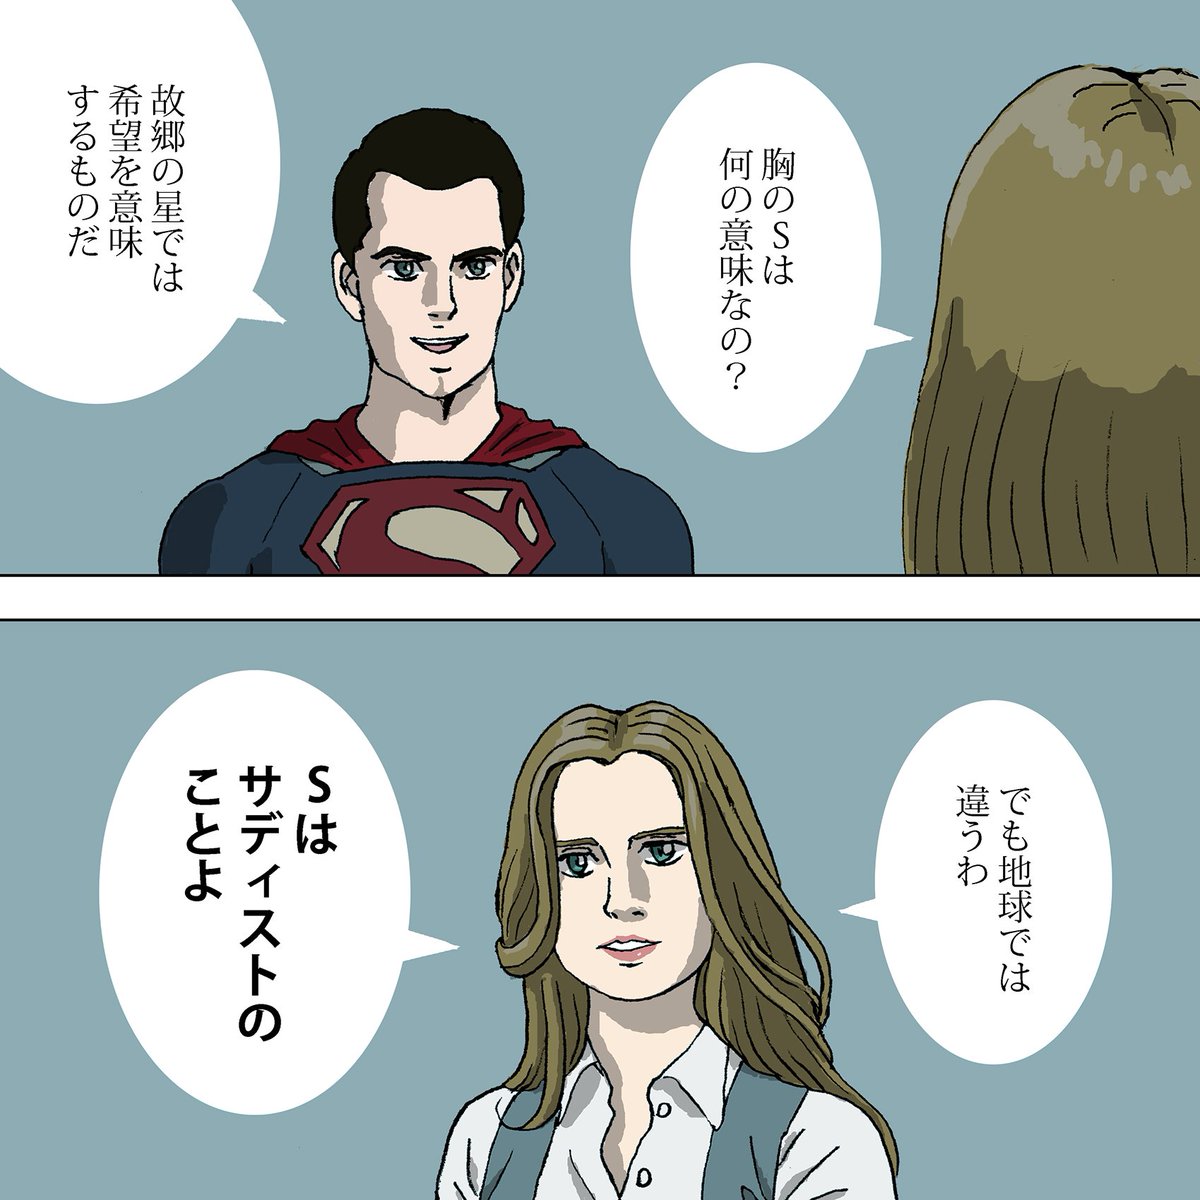 マン・オブ・スティールのスーパーマンの胸のSの意味
#あなたの名前の意味は何か 